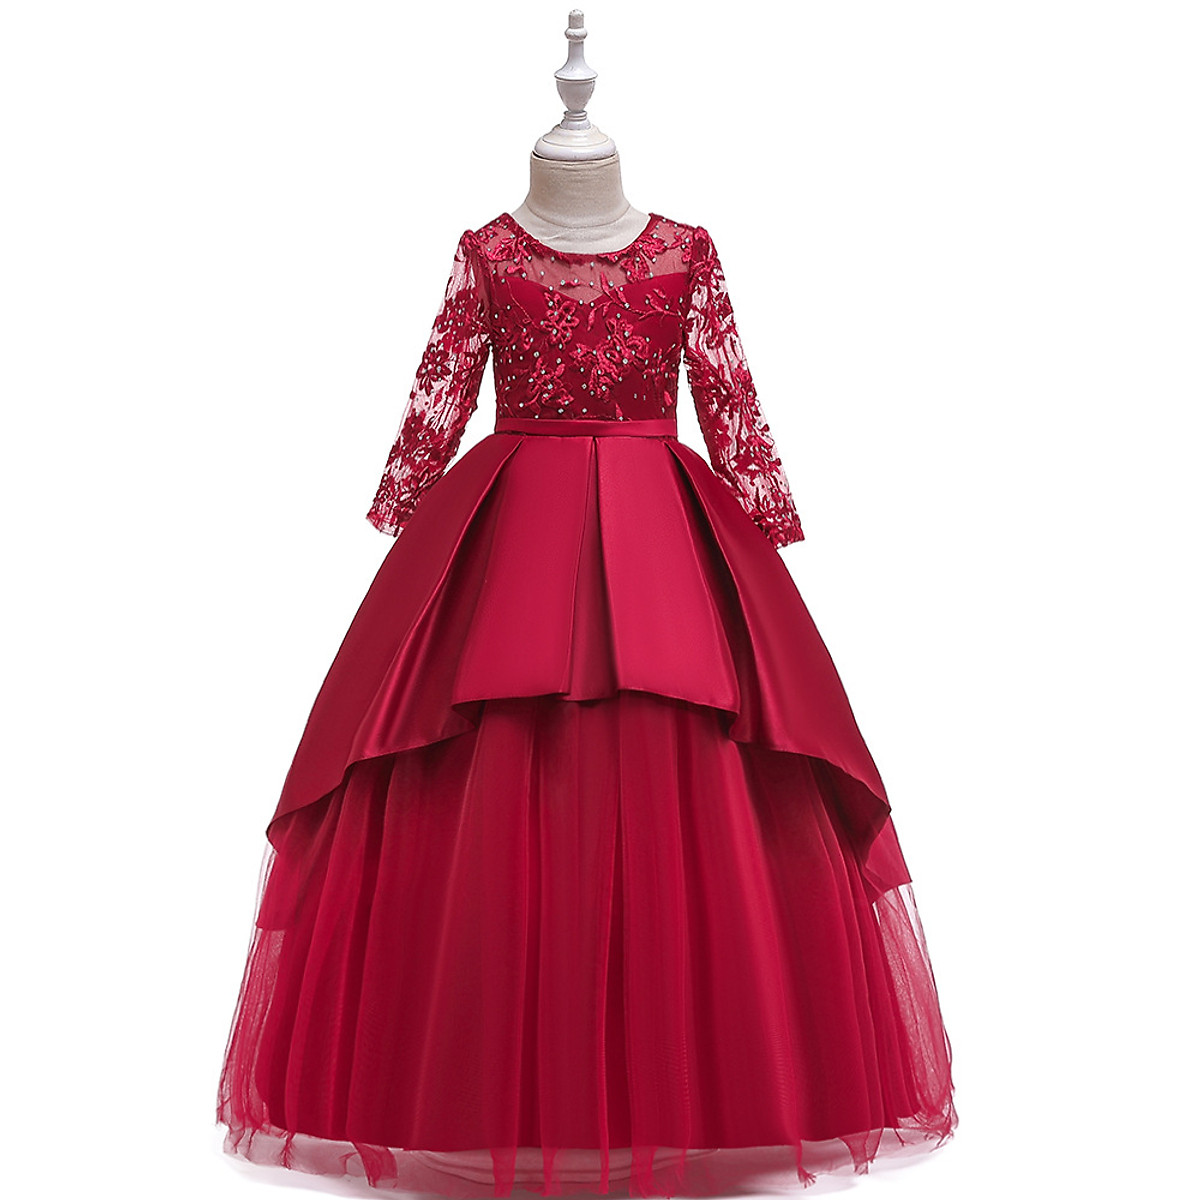 Đầm dạ hội kiểu lệch vai xẻ đùi phối hoa eo Đỏ  AlvinStoreVn